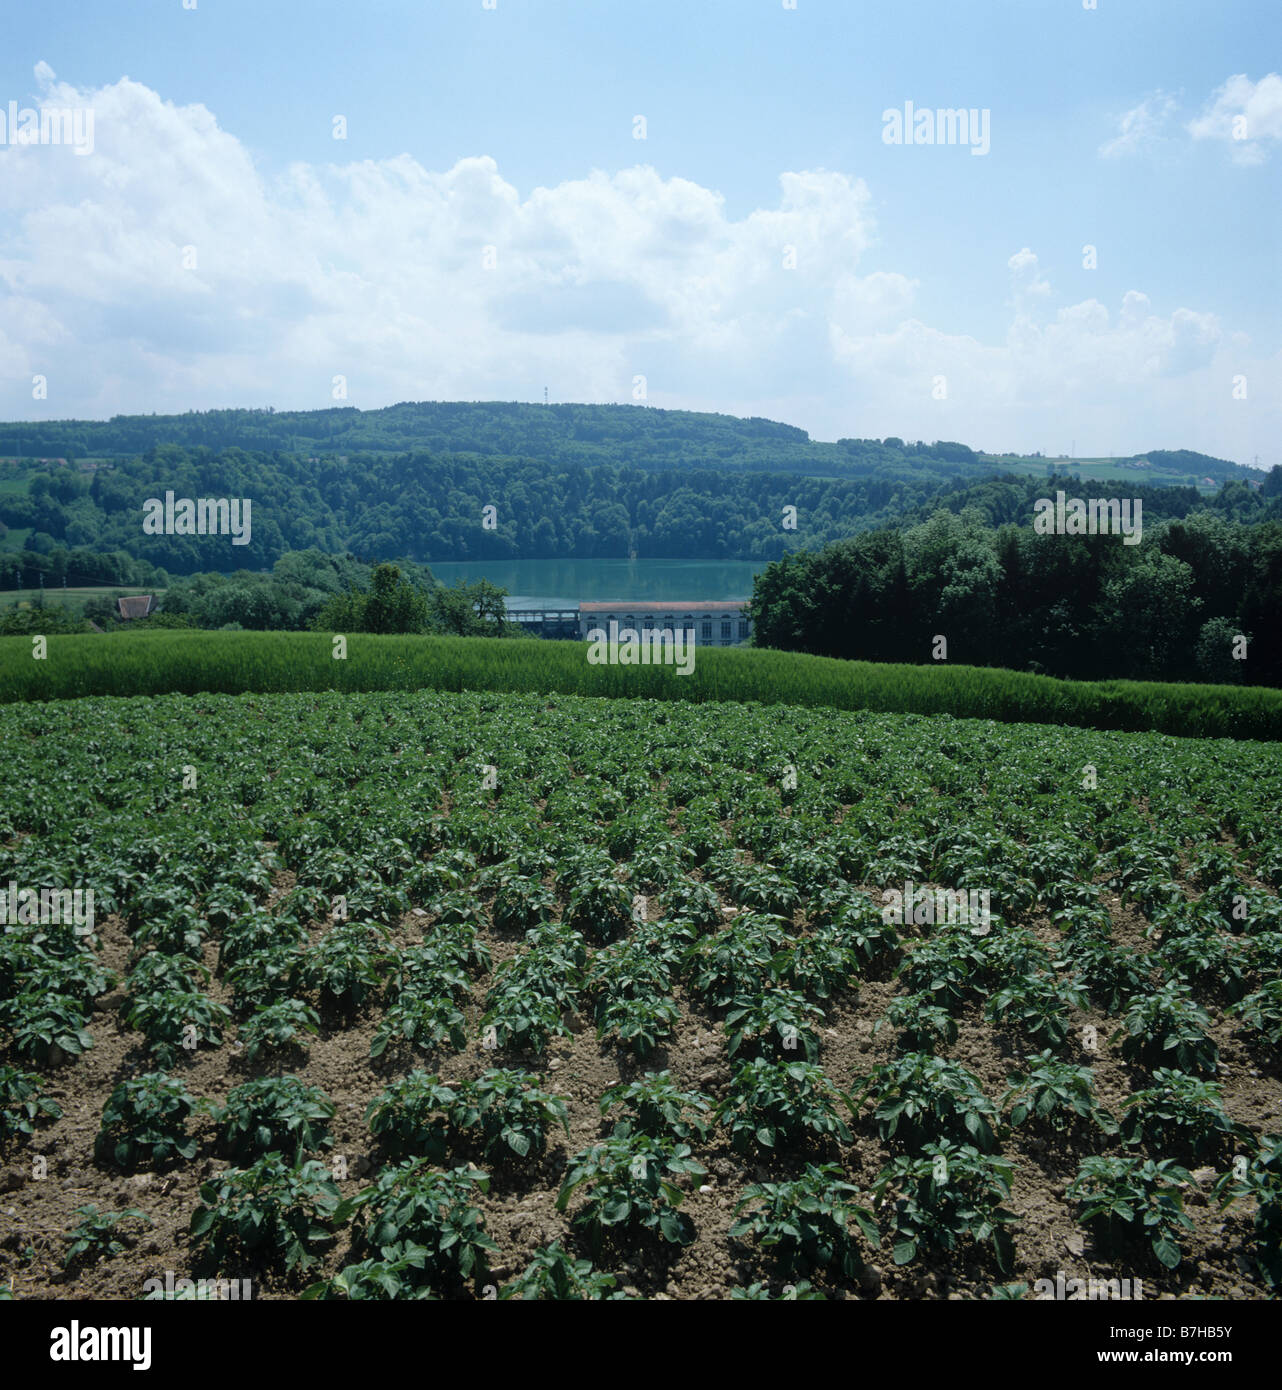 Los jóvenes cultivo de papa en tierras agrícolas alrededor de un lago de Suiza Foto de stock